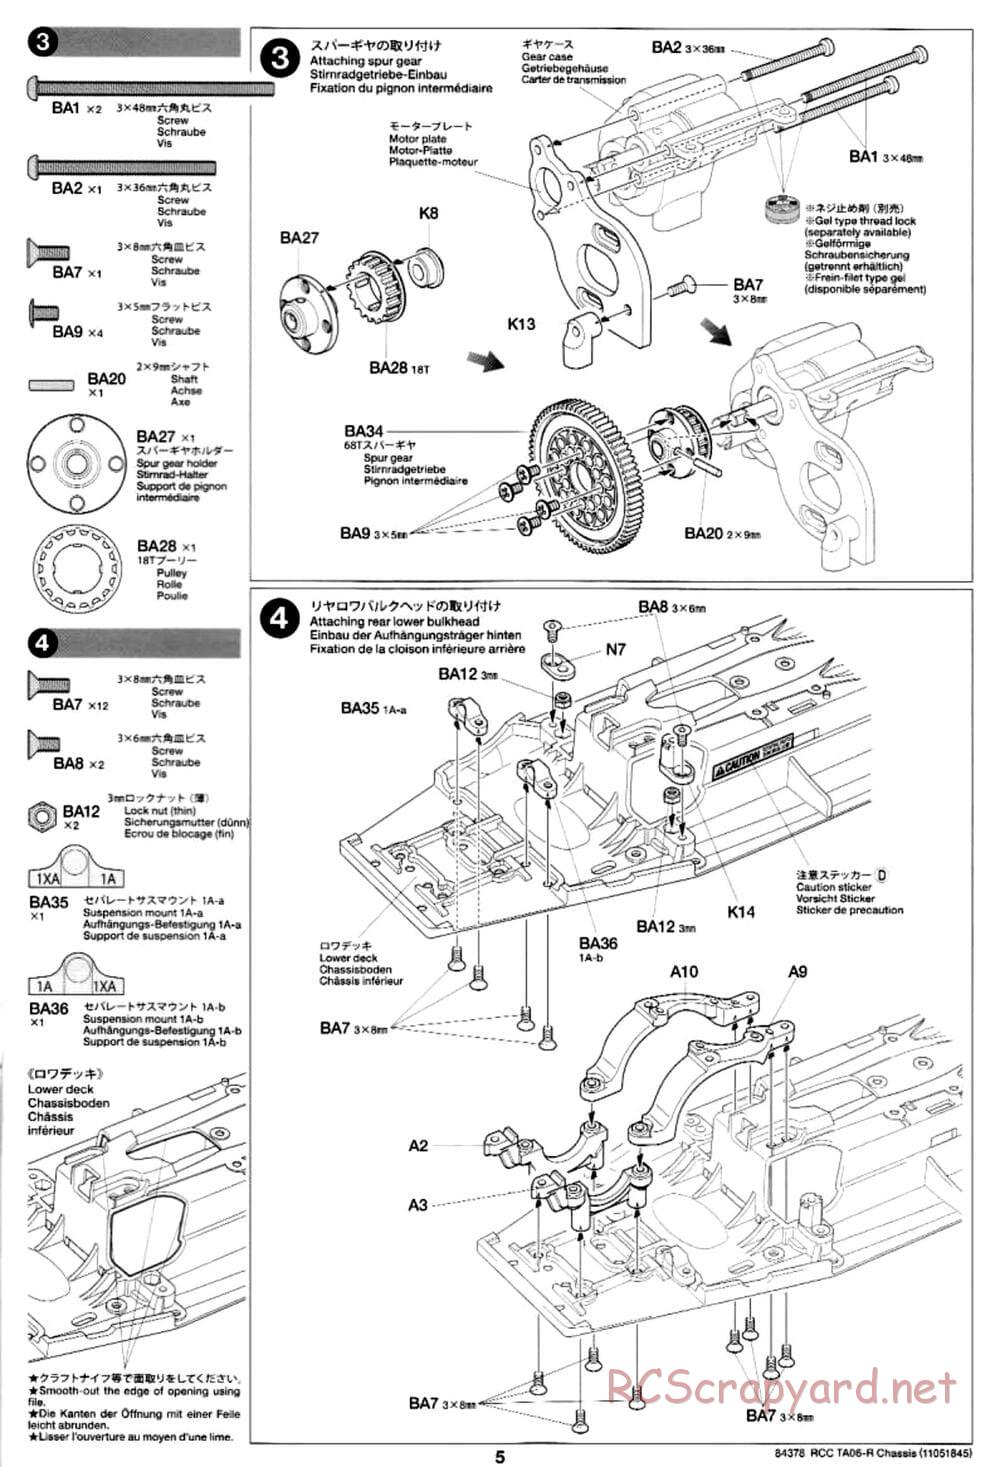 Tamiya - TA06-R Chassis - Manual - Page 5